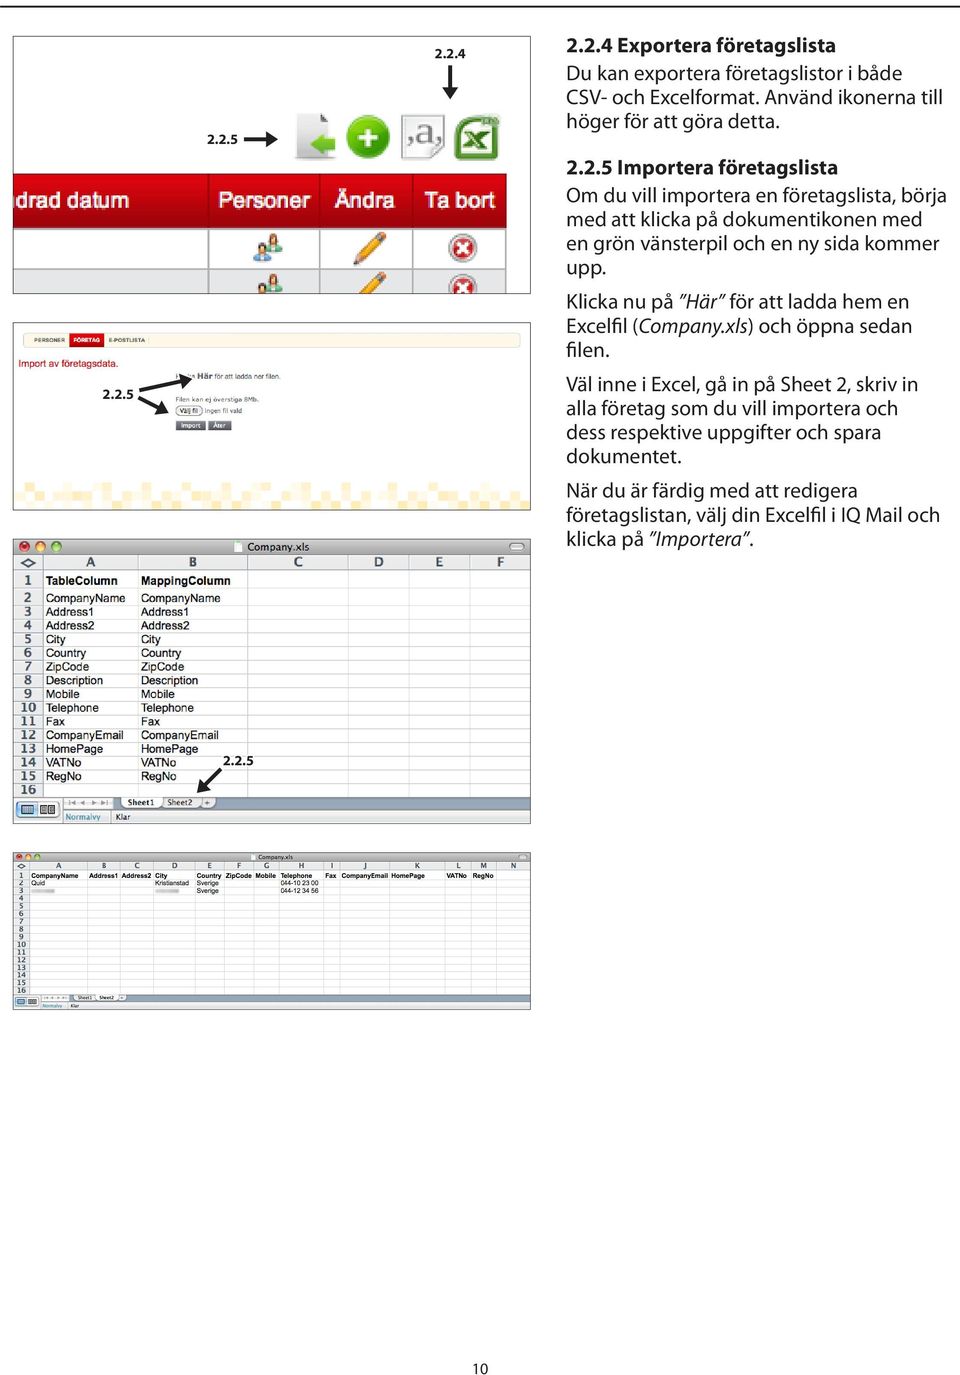 Väl inne i Excel, gå in på Sheet 2, skriv in alla företag som du vill importera och dess respektive uppgifter och spara dokumentet.